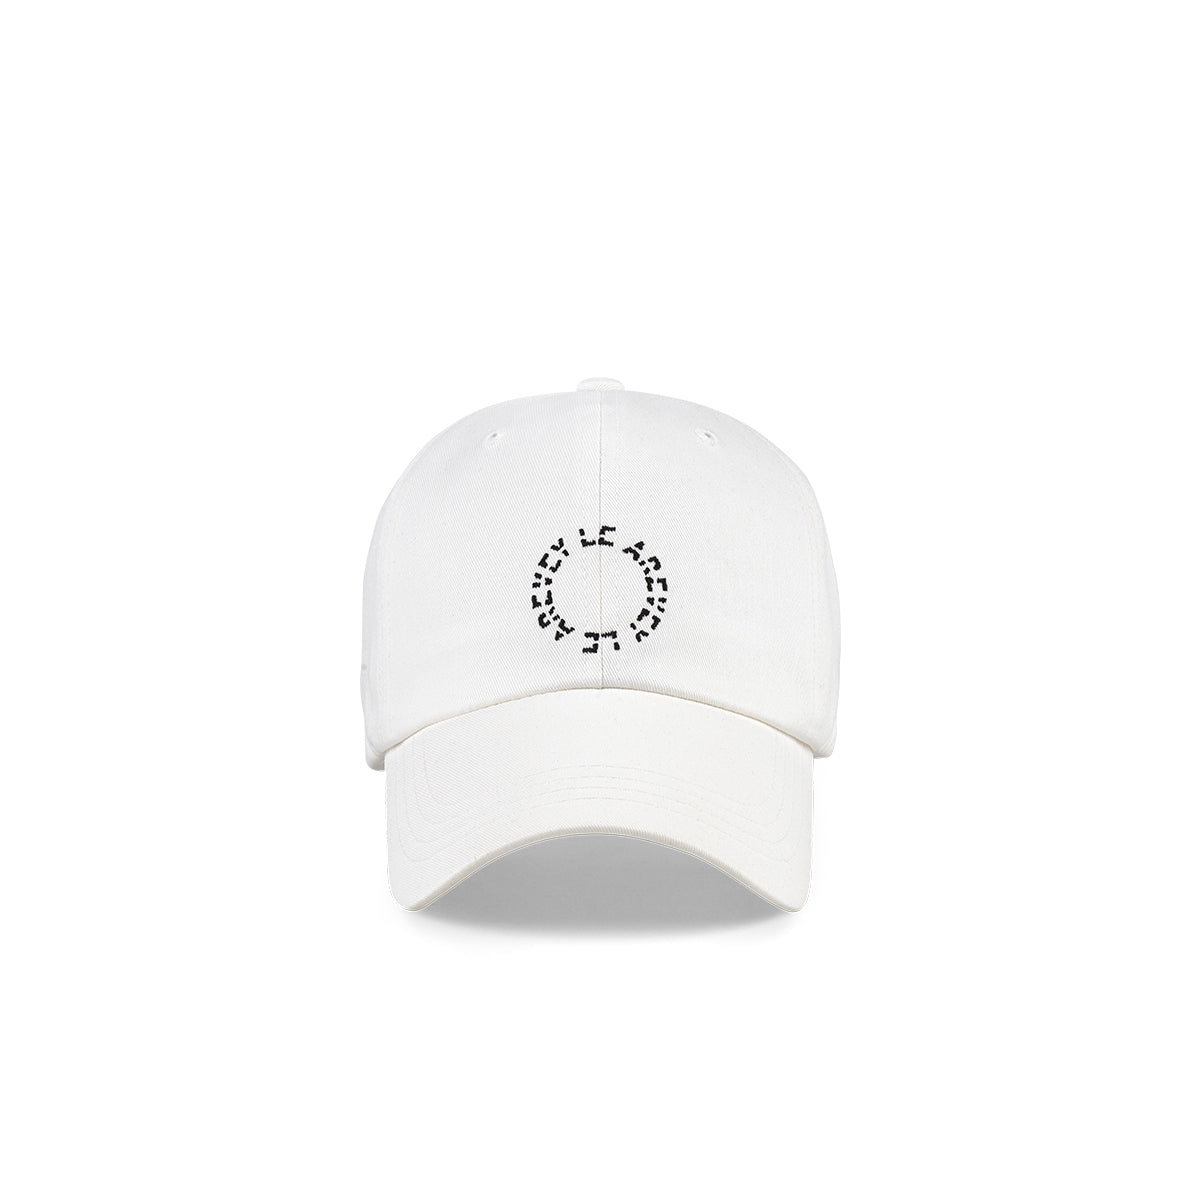 89 ロゴボールキャップ / 89 logo ball cap – 60% - SIXTYPERCENT